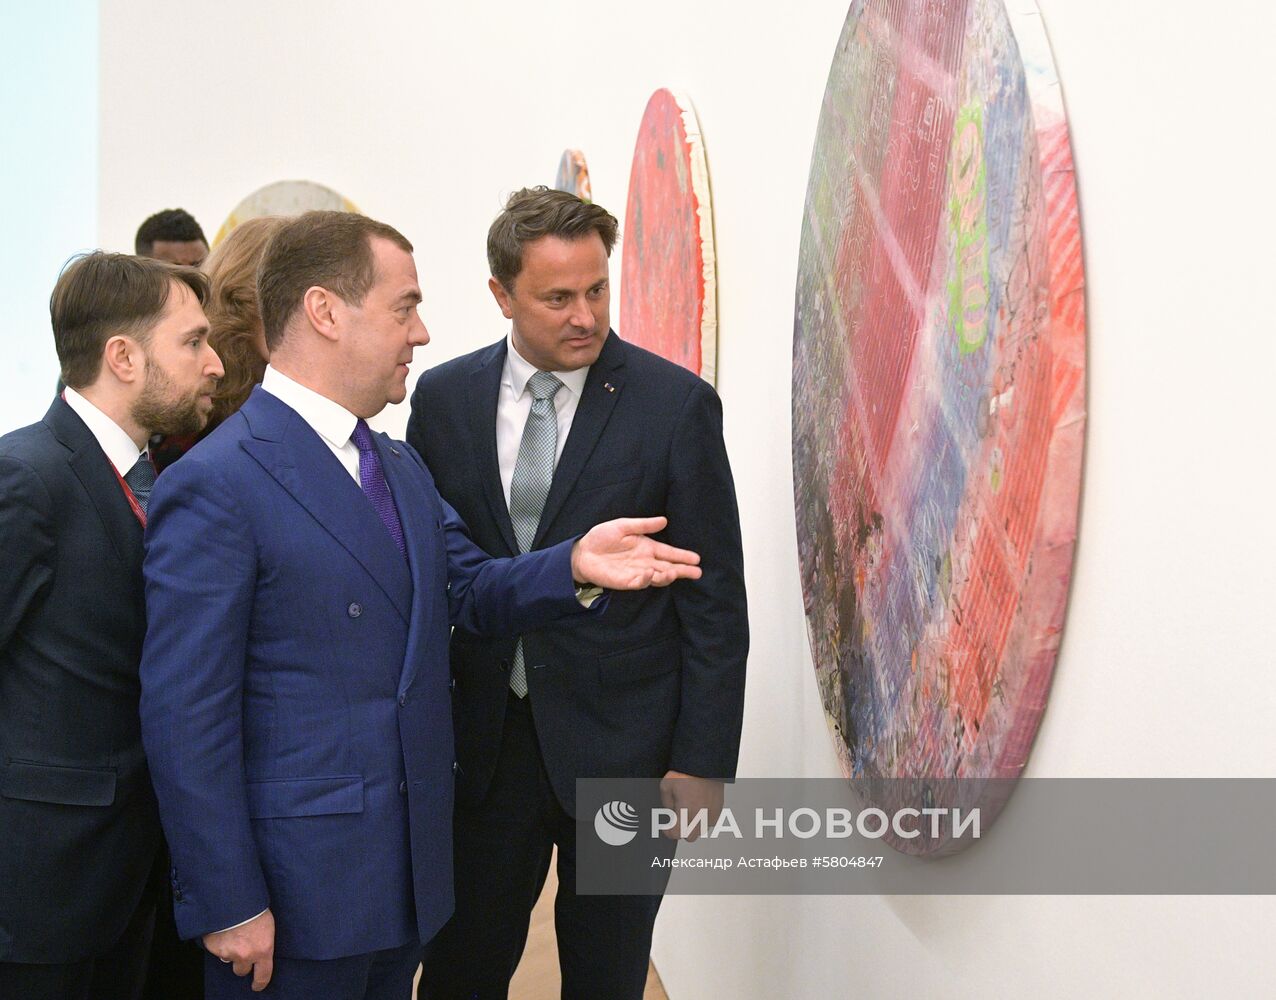 Официальный визит премьер-министра РФ Д. Медведева в Великое Герцогство Люксембург. День второй